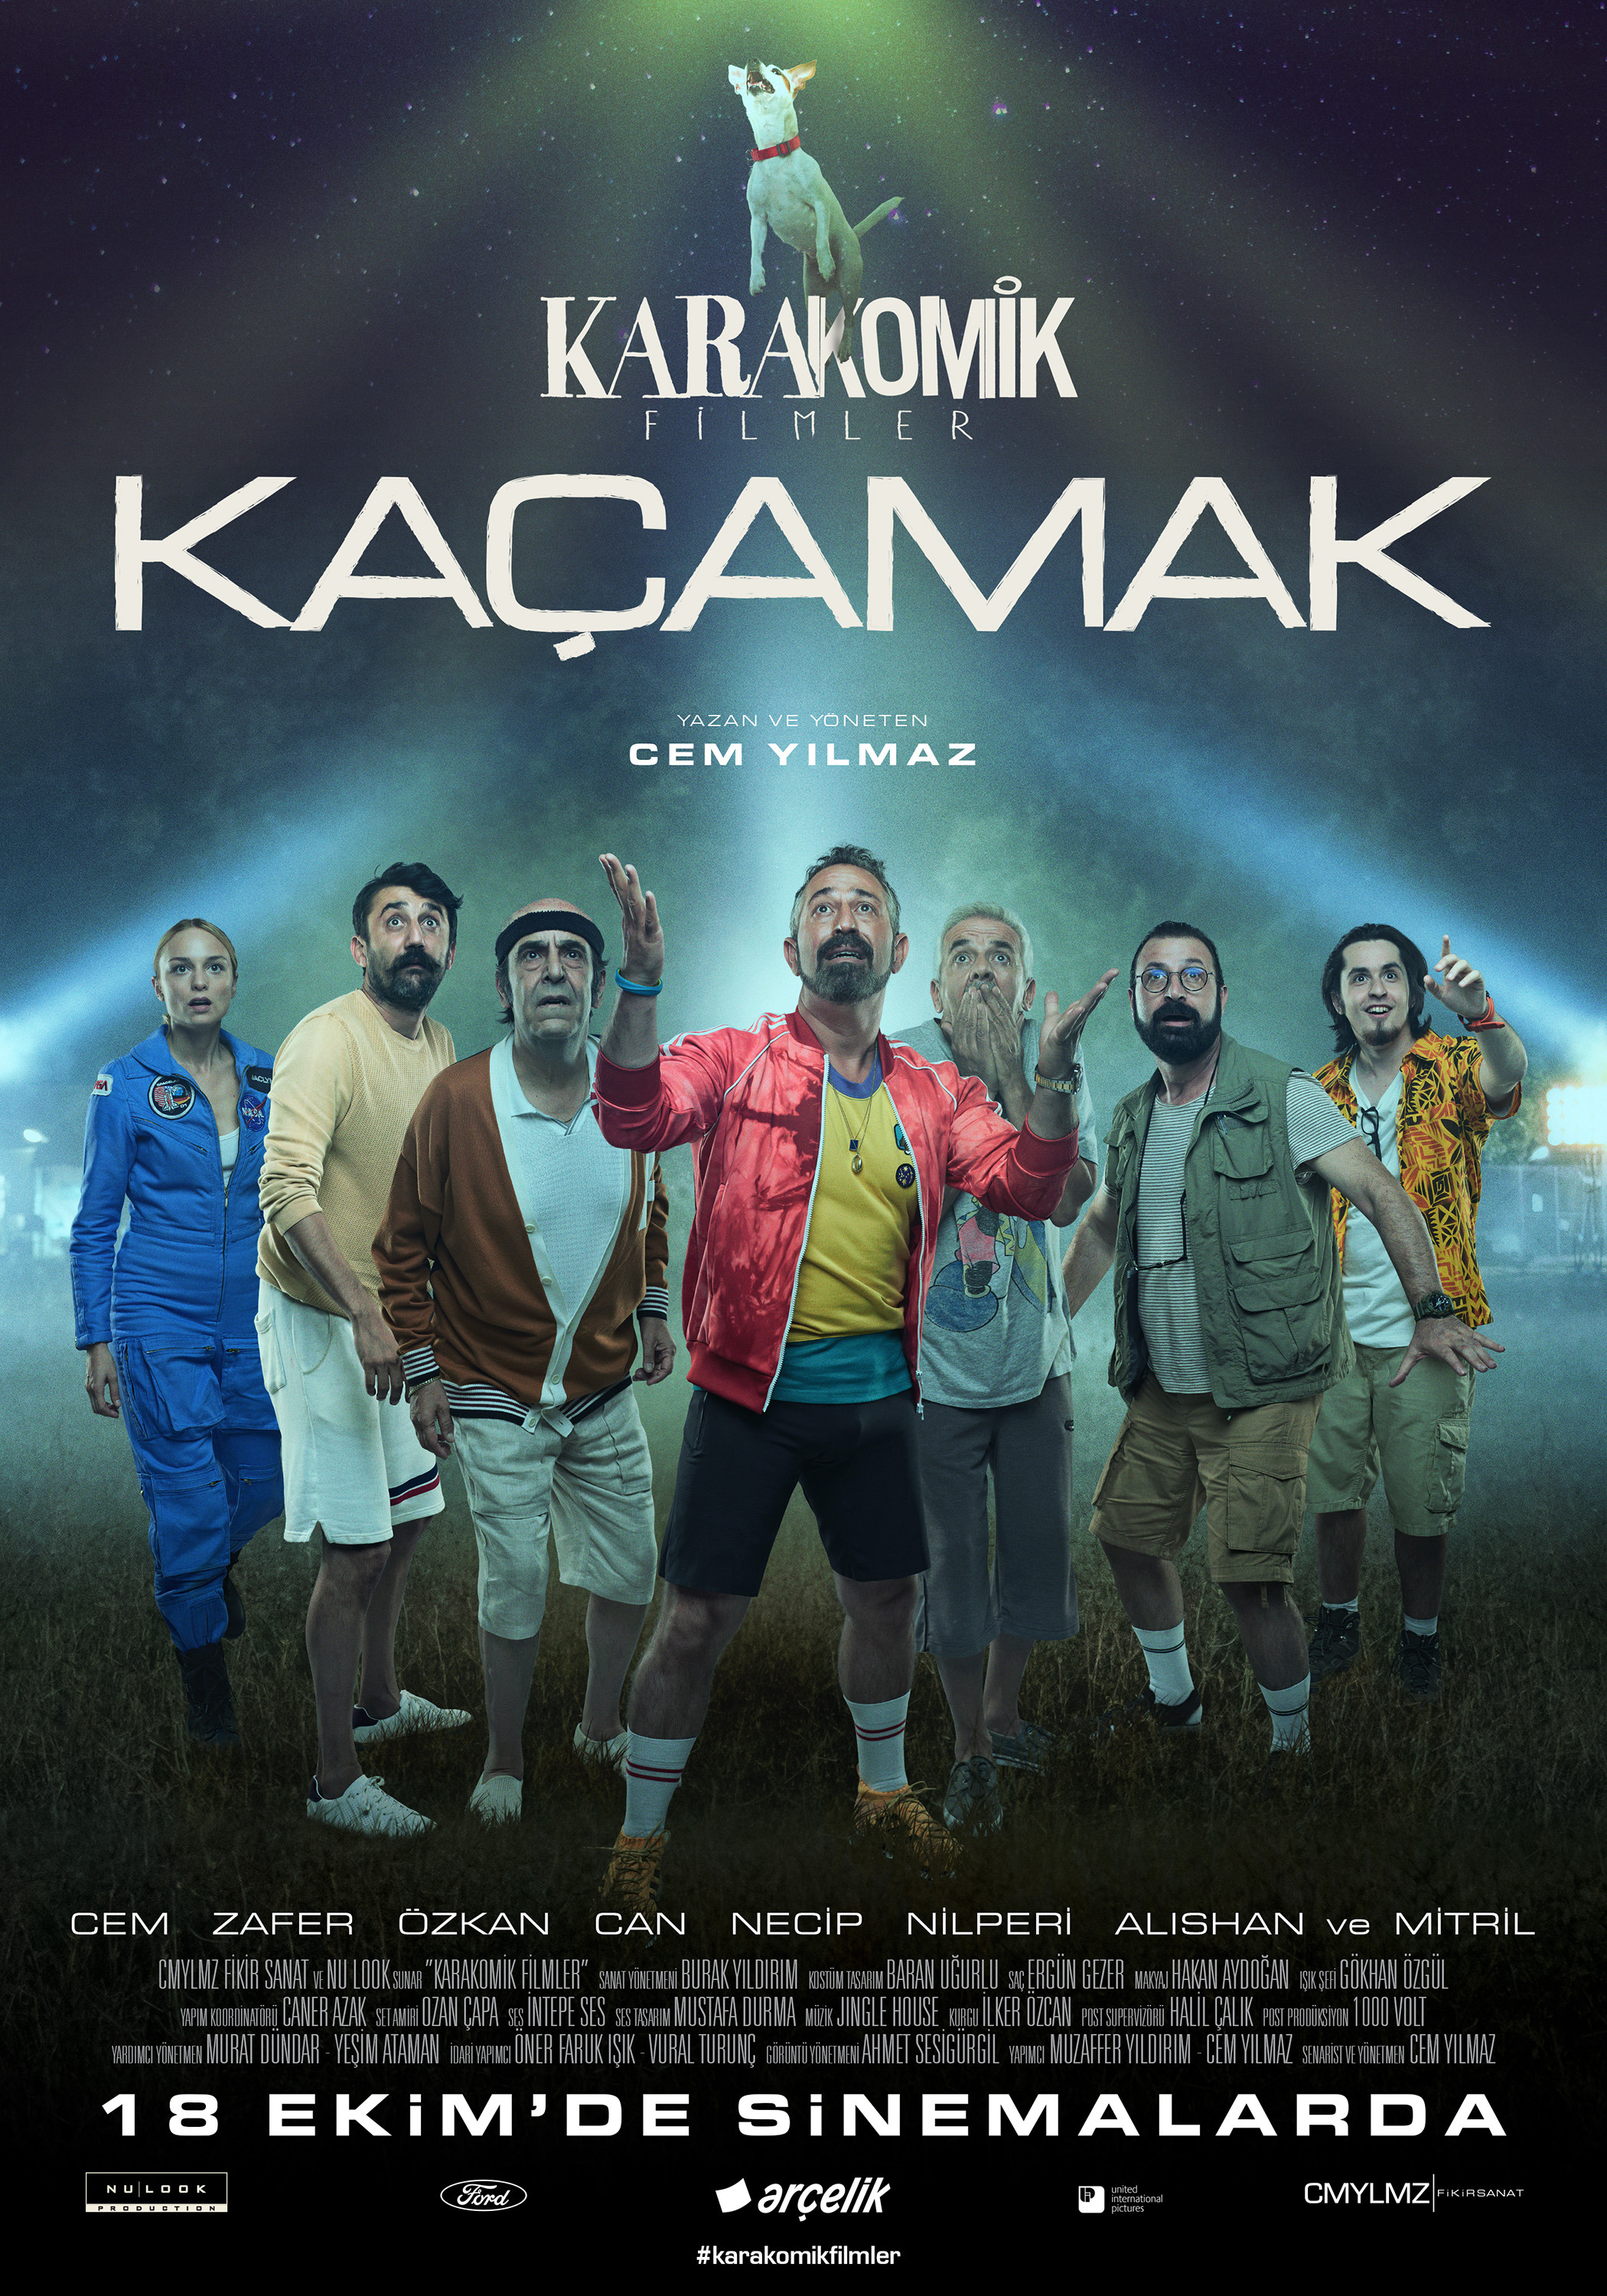 Mega Sized Movie Poster Image for Karakomik Filmler (#7 of 9)